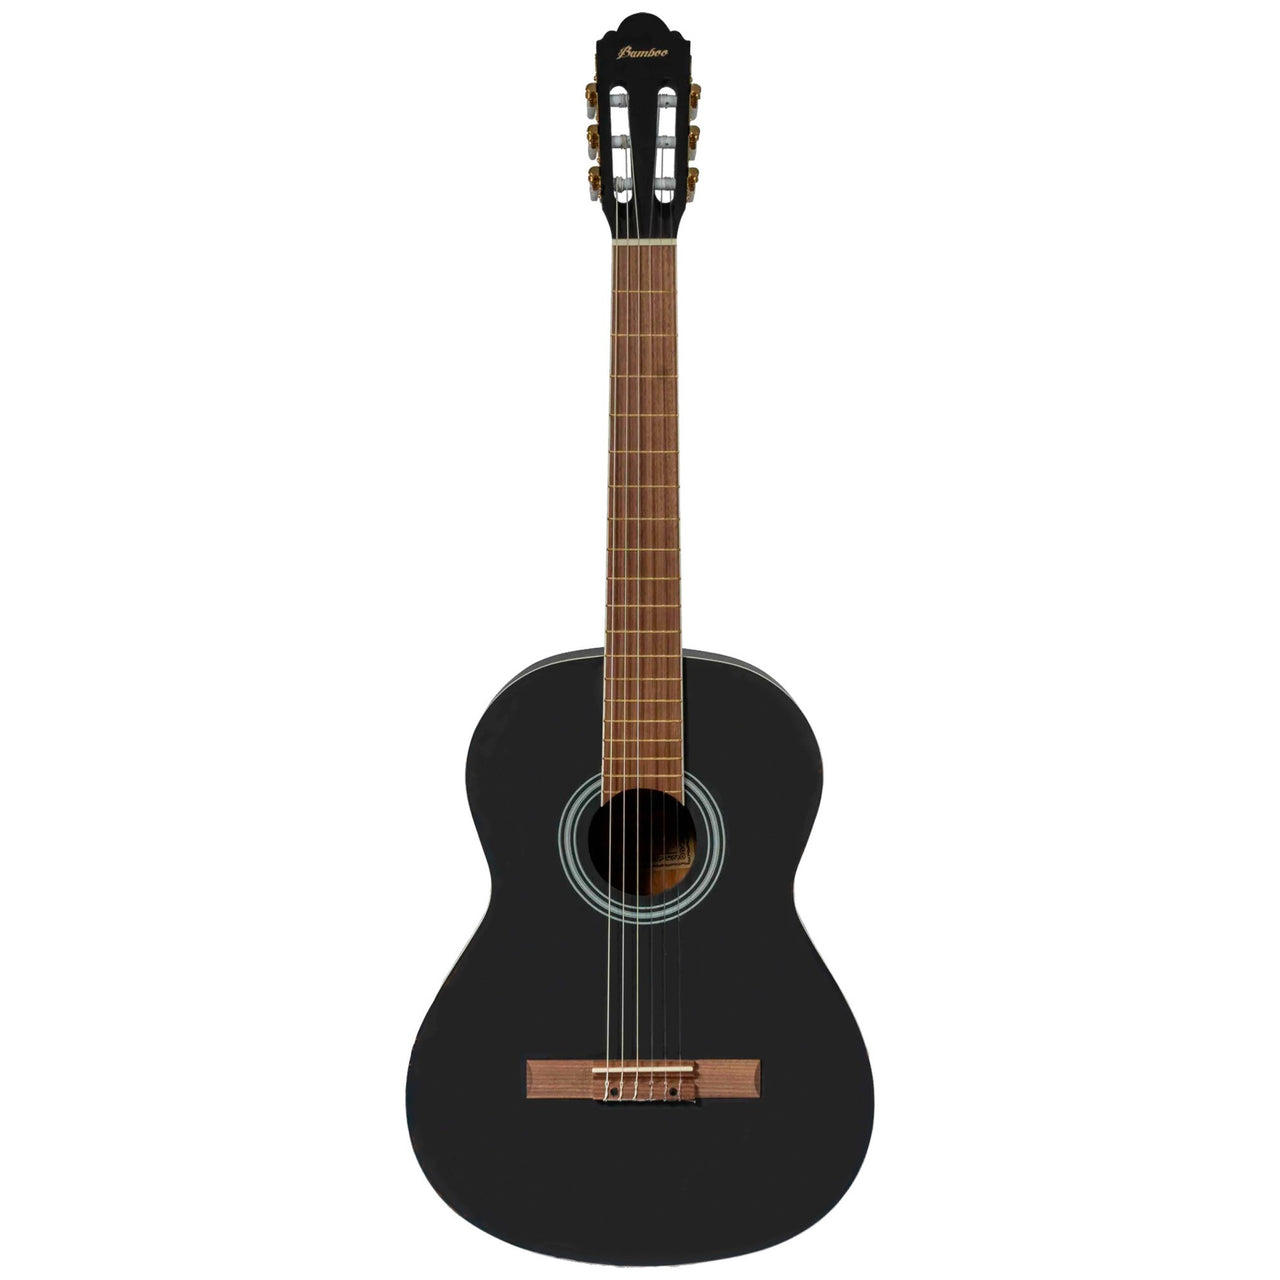 Guitarra Clasica Bamboo Negra 39" C/funda, Gc-39-bk